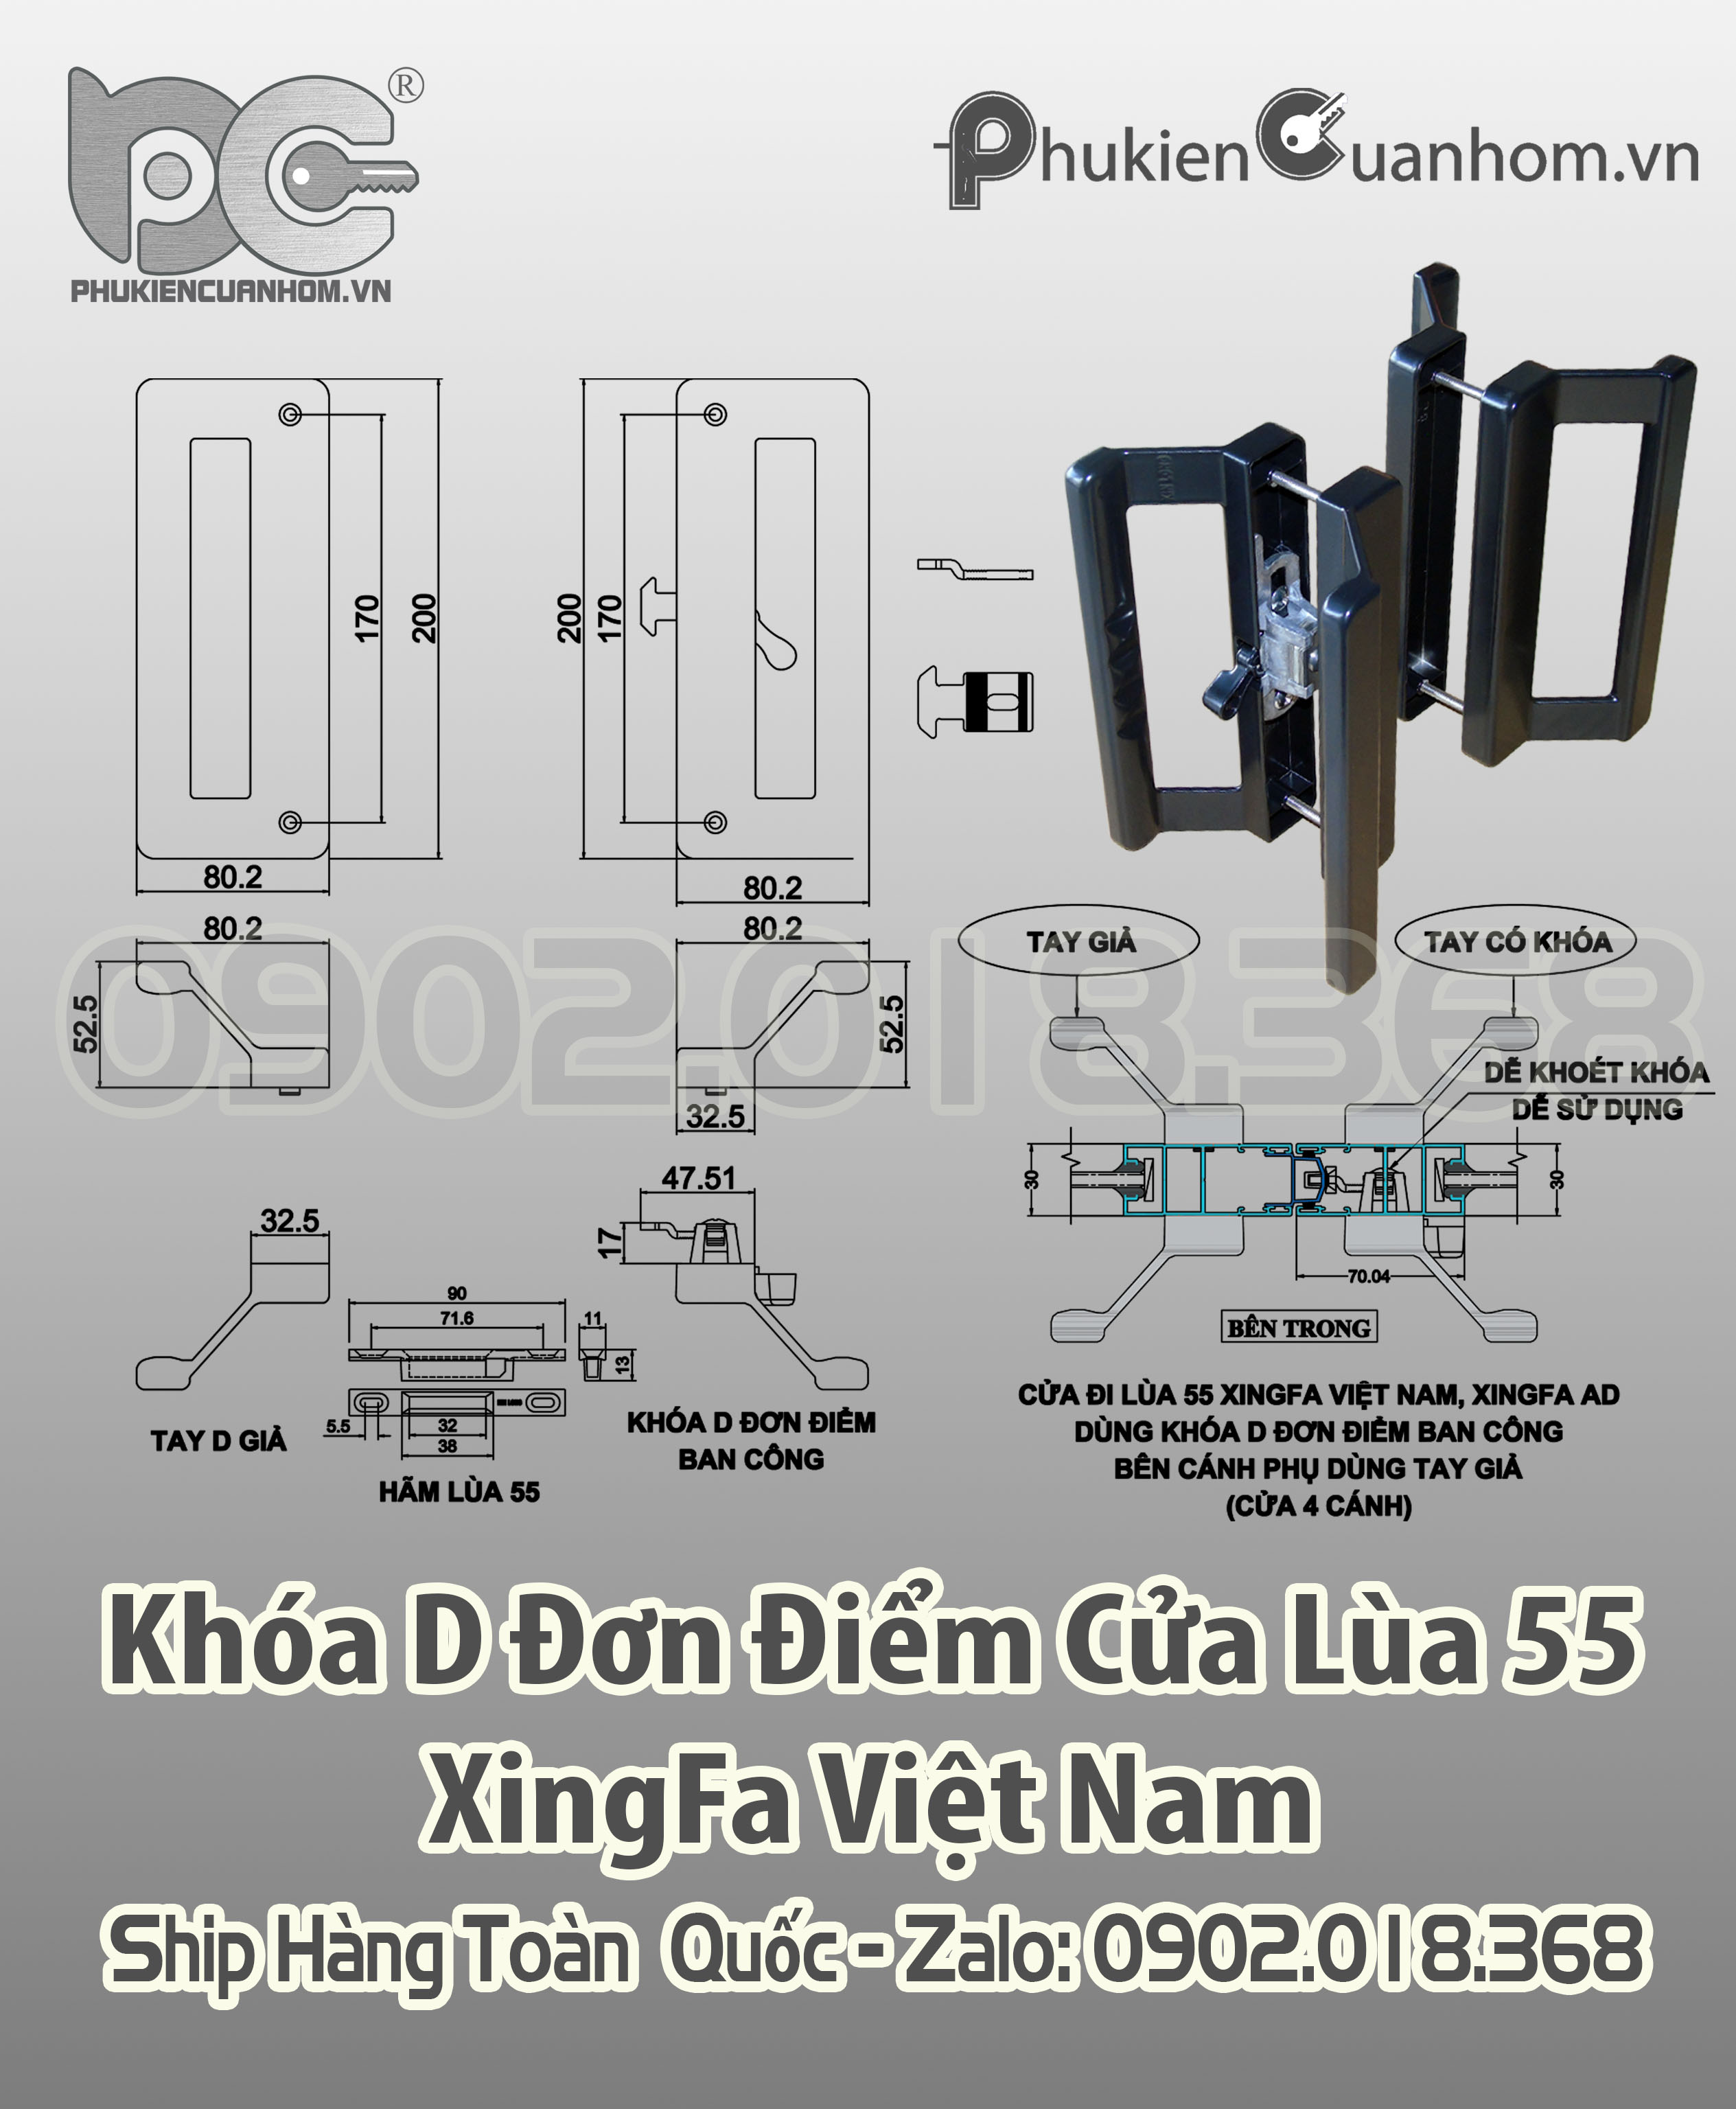 Khóa chữ D đơn điểm KinLong chính hãng cửa lùa hệ 55 Xingfa Việt Nam